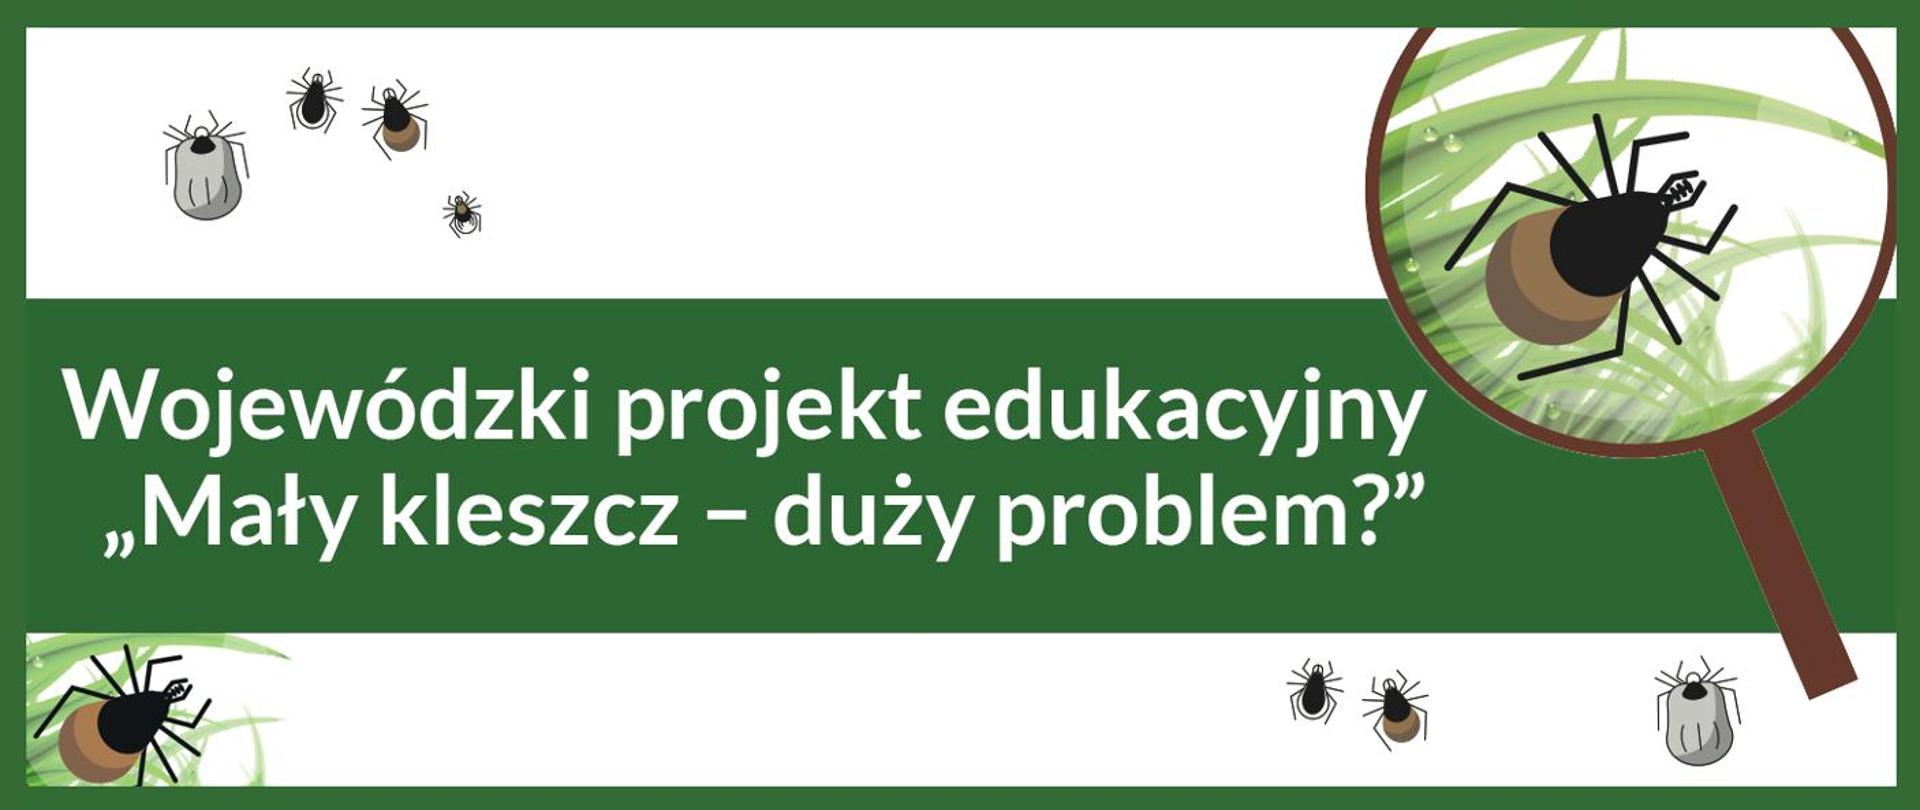 baner Wojewódzki projekt edukacyjny "Mały kleszcz - duży problem